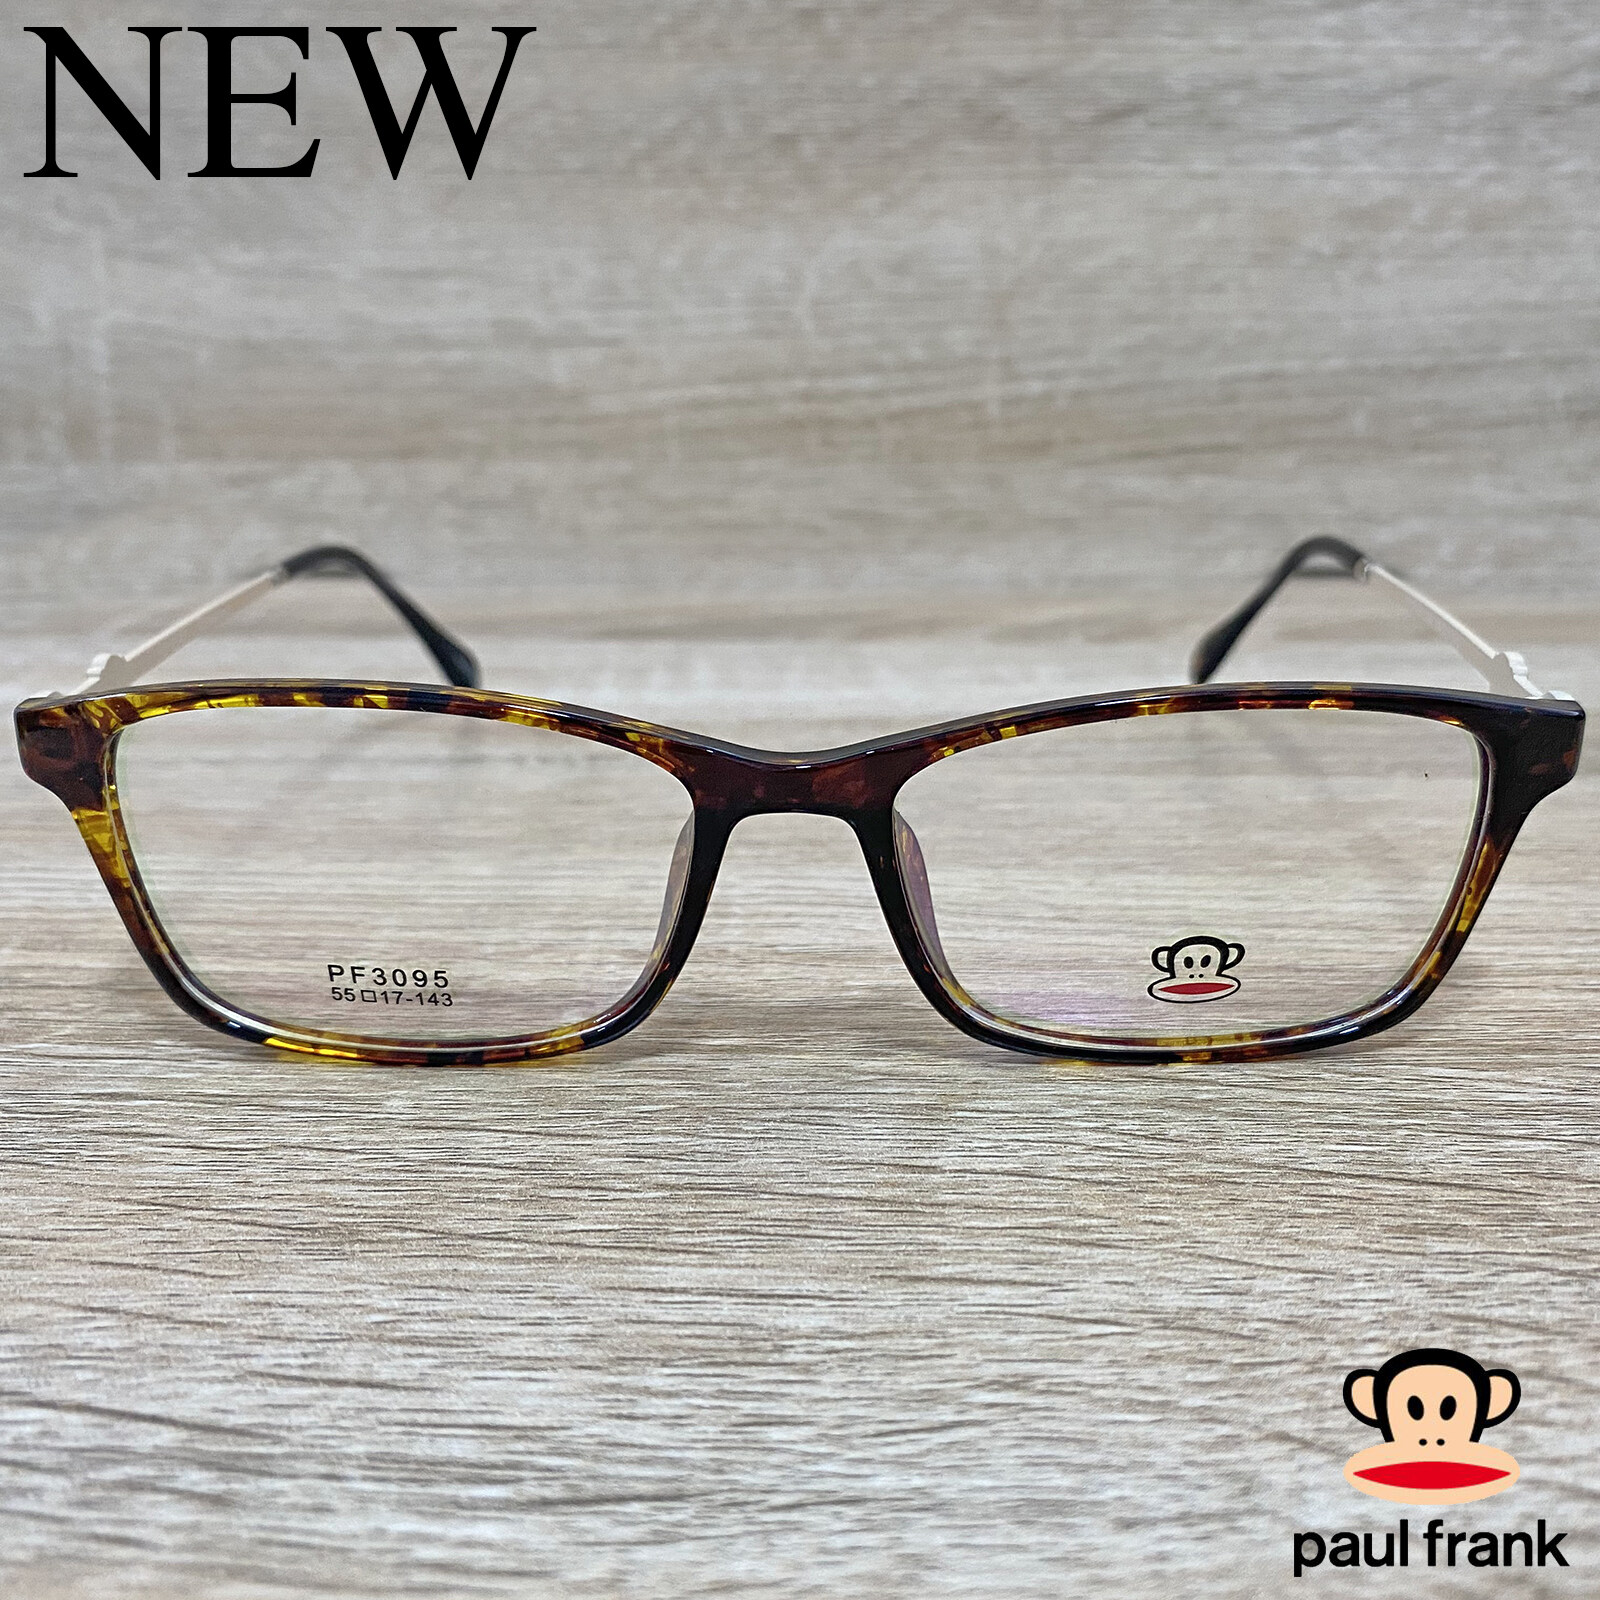 Fashion กรอบแว่นตา สำหรับตัดเลนส์ แว่นตาชาย หญิง แว่นตา รุ่น Paul Frank 3095 สีน้ำตาลกละ กรอบเต็ม ทรงเหลี่ยม ขาข้อต่อ วัสดุ TR 90 รับตัดเลนส์ทุกชนิด